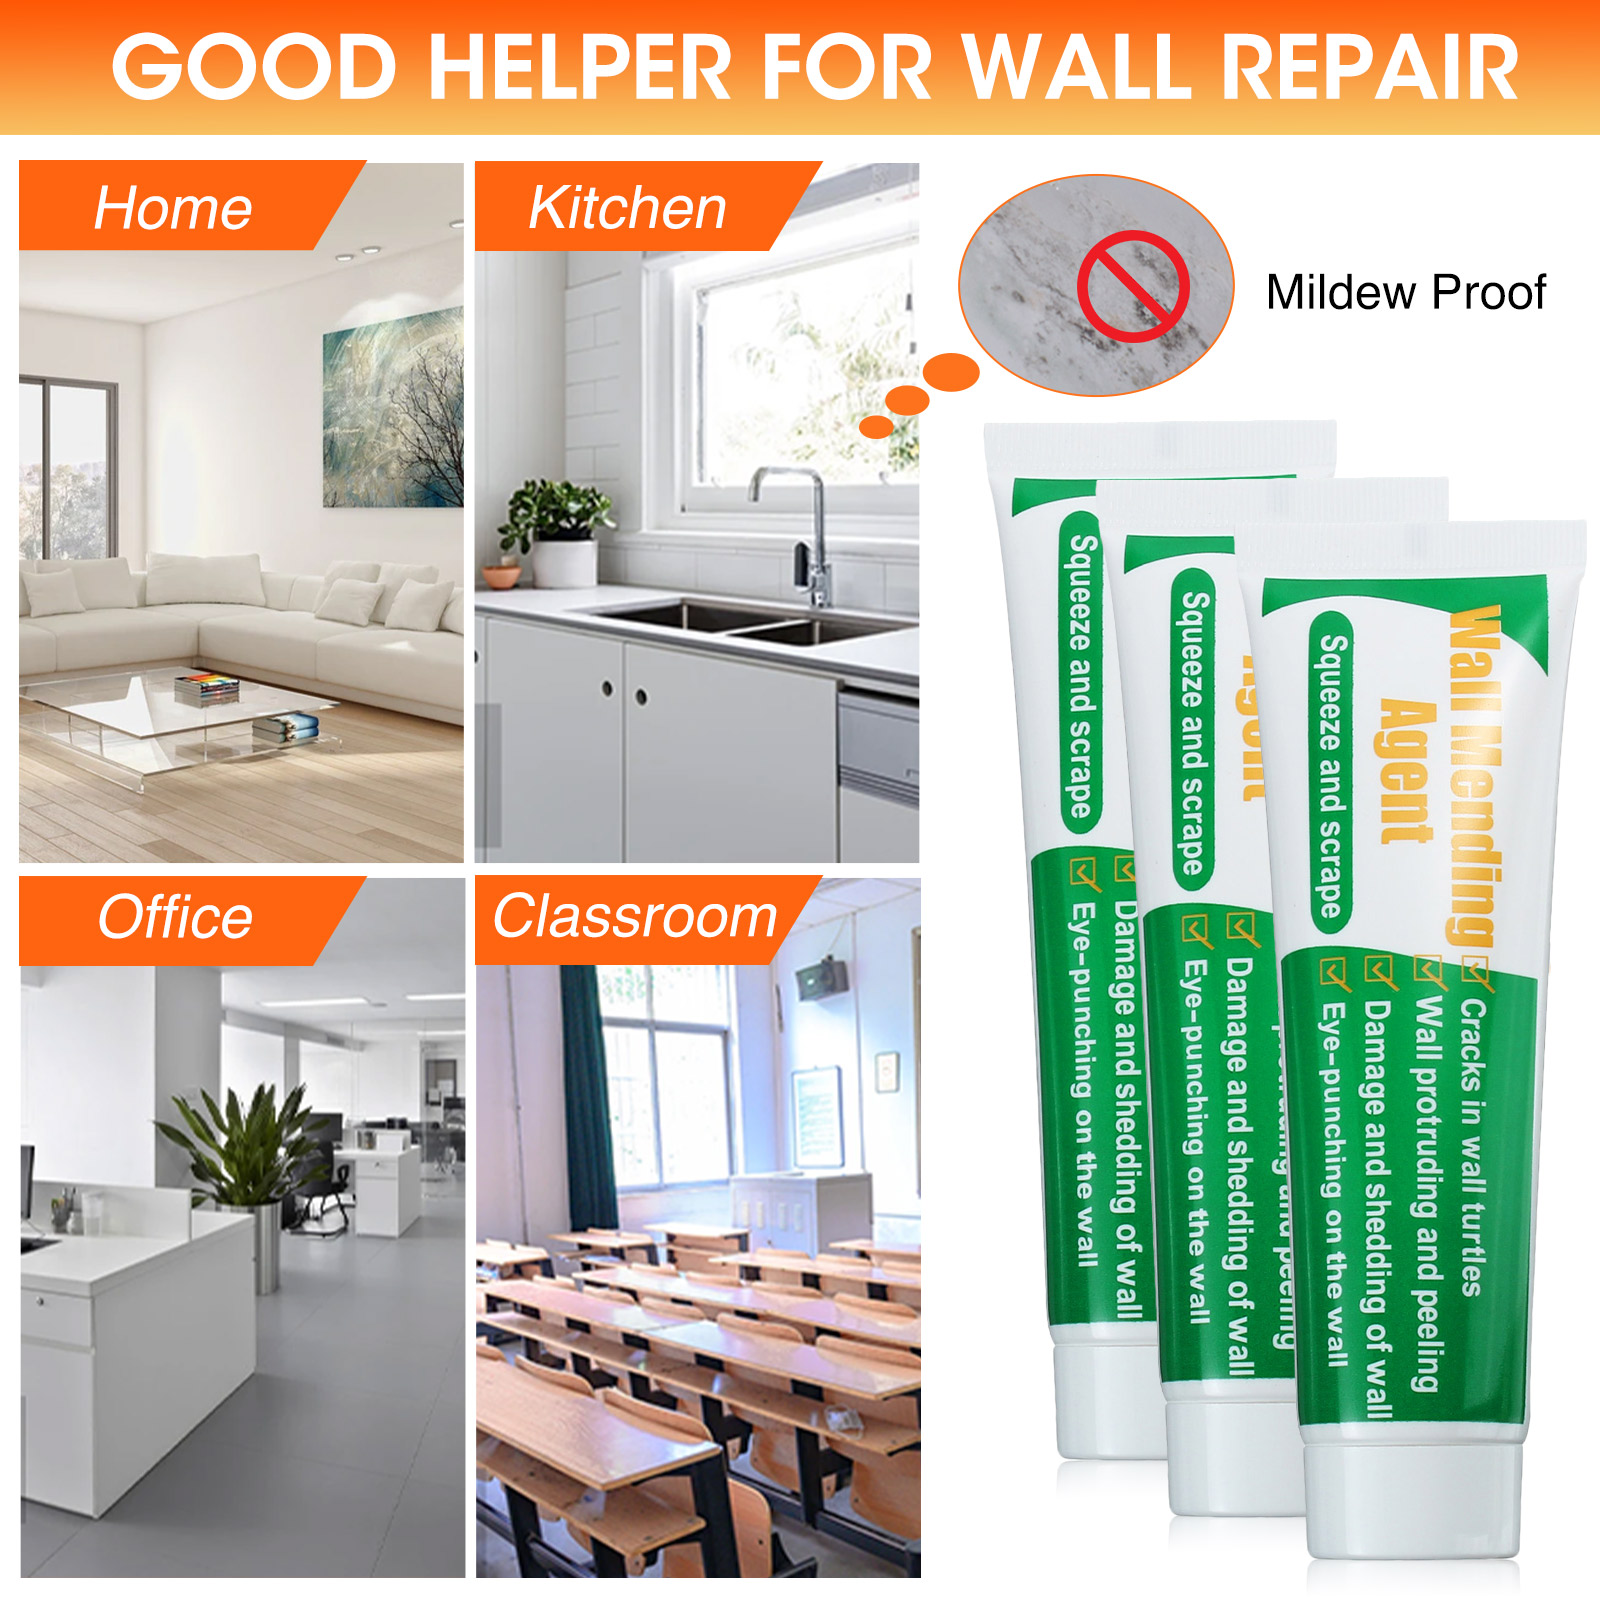 GOCHANGE-Wall-Repair-Tools-2-Sets-Wall-Paint--Head--Scraper-Convenient-Bricklayer-Home-Improvement-T-1956221-5